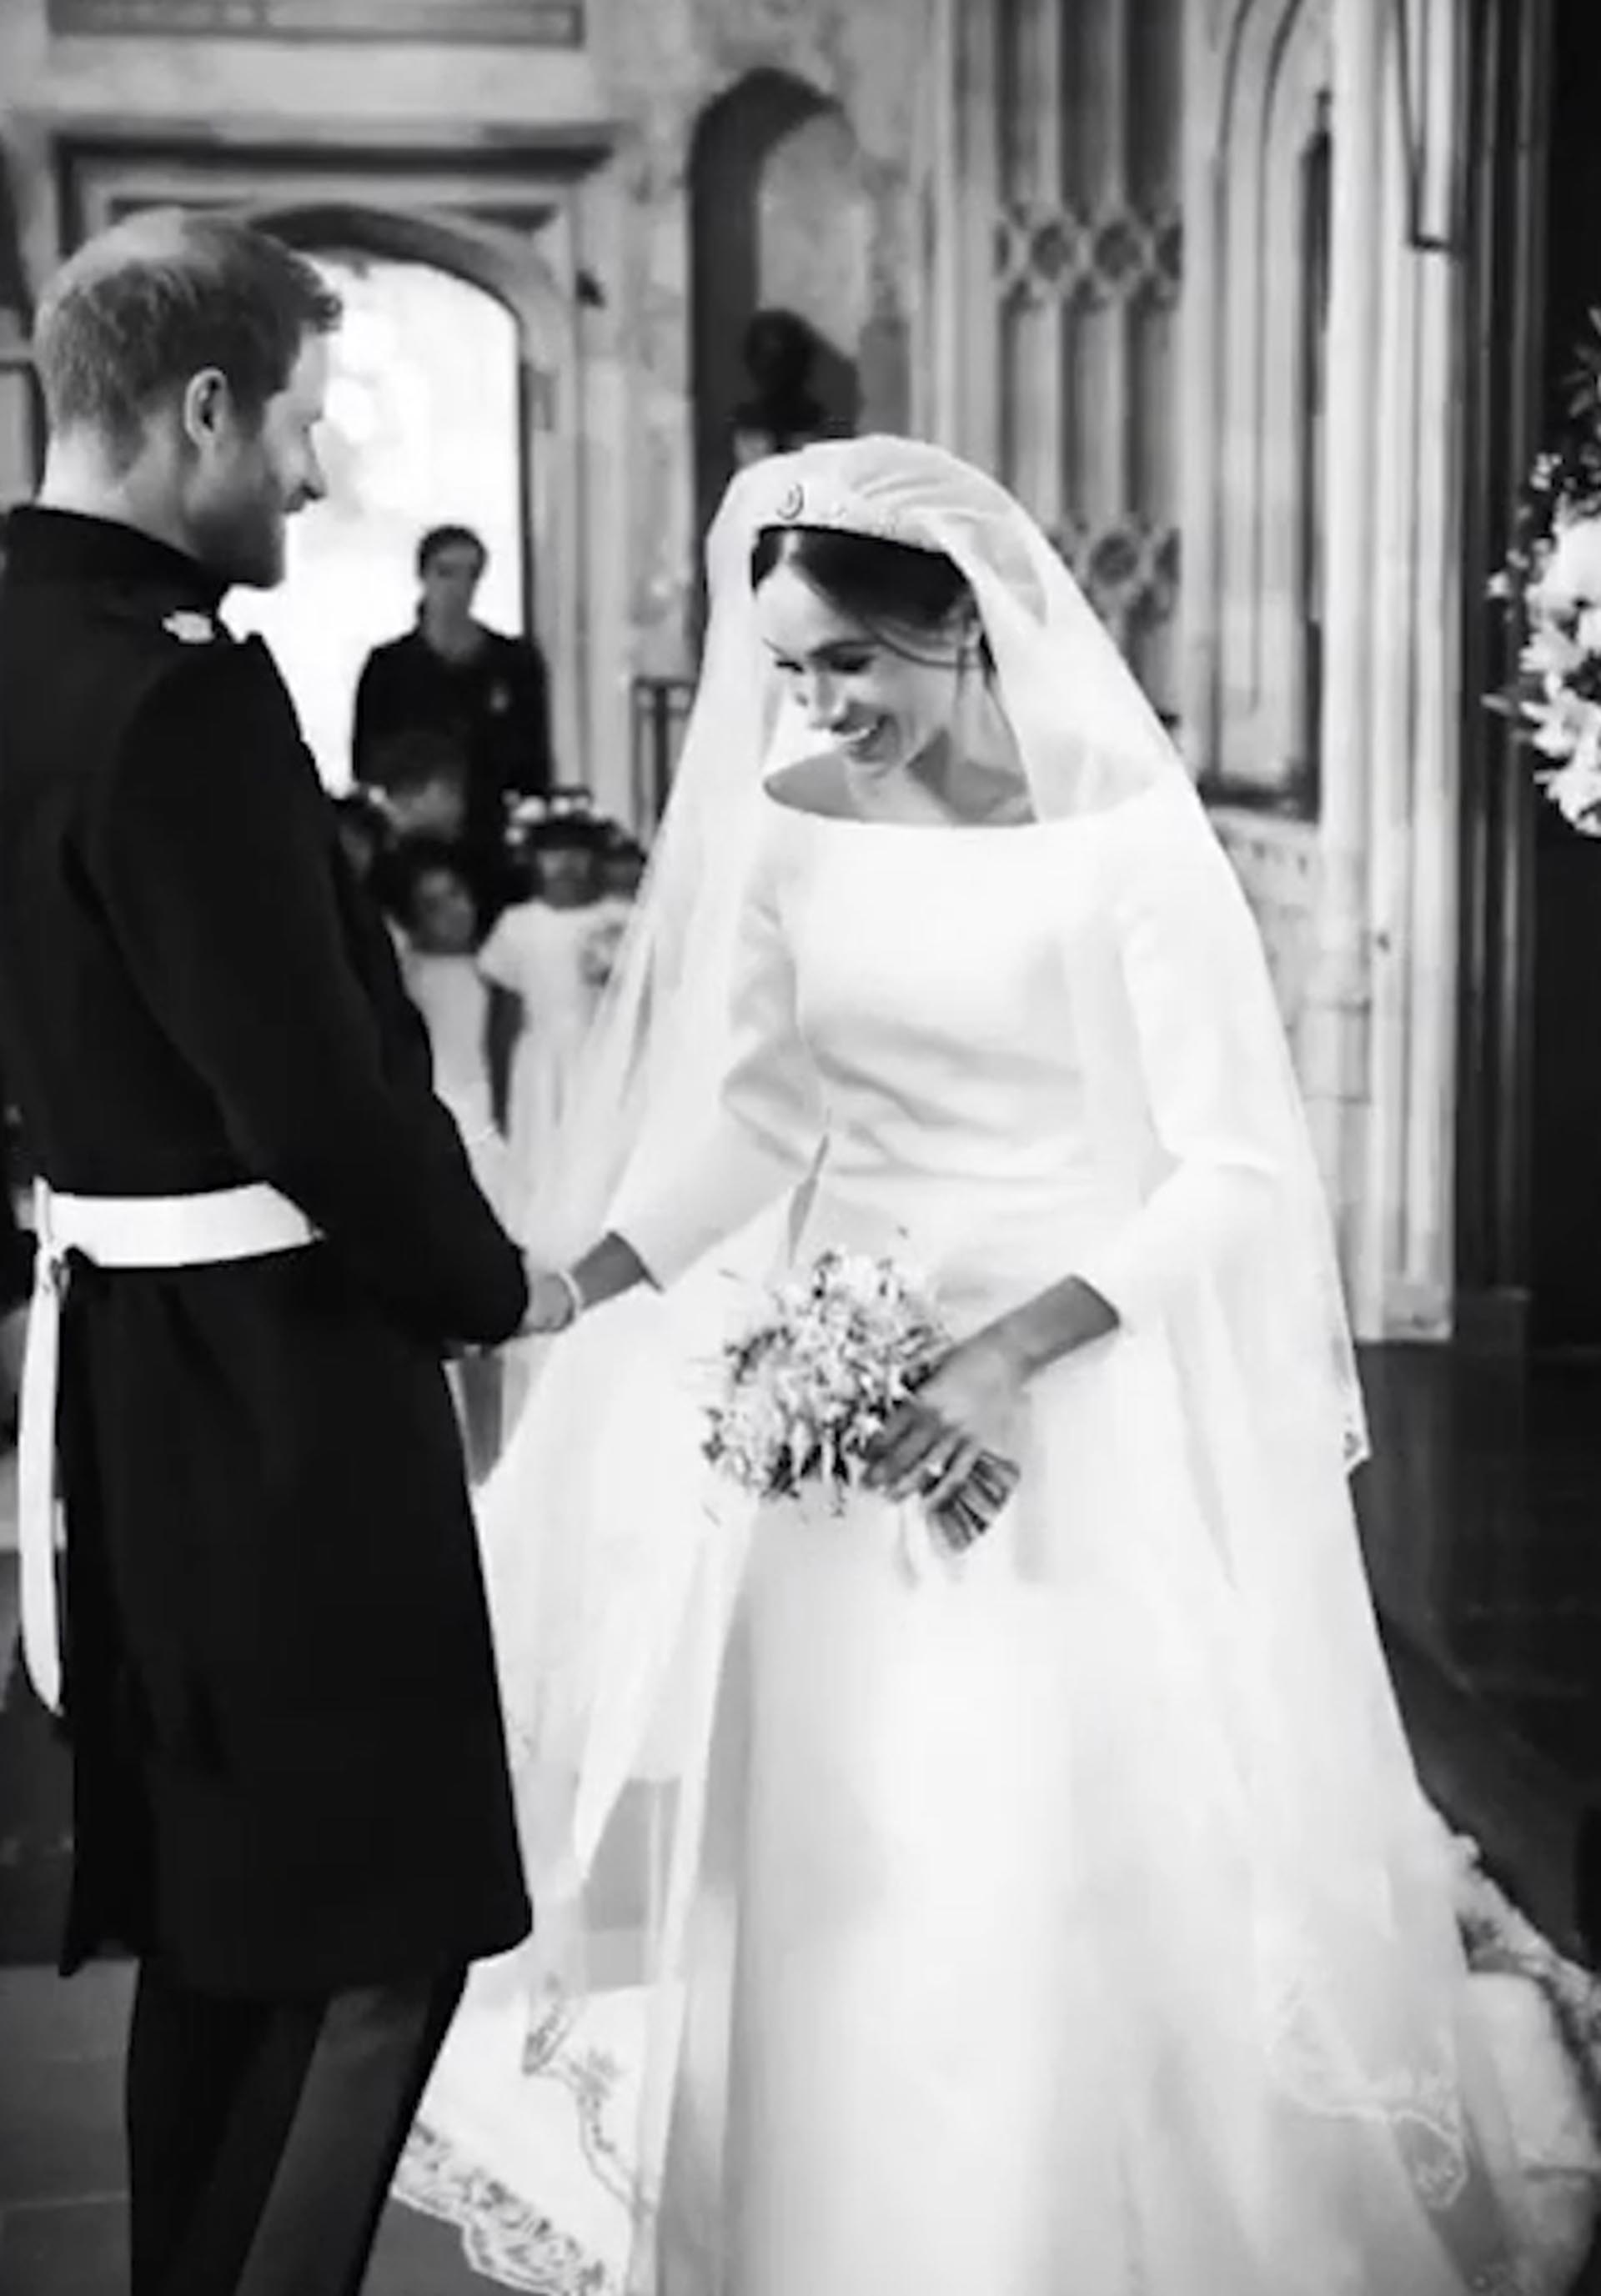 Las imágenes inéditas del casamiento de Meghan Markle y el príncipe Harry